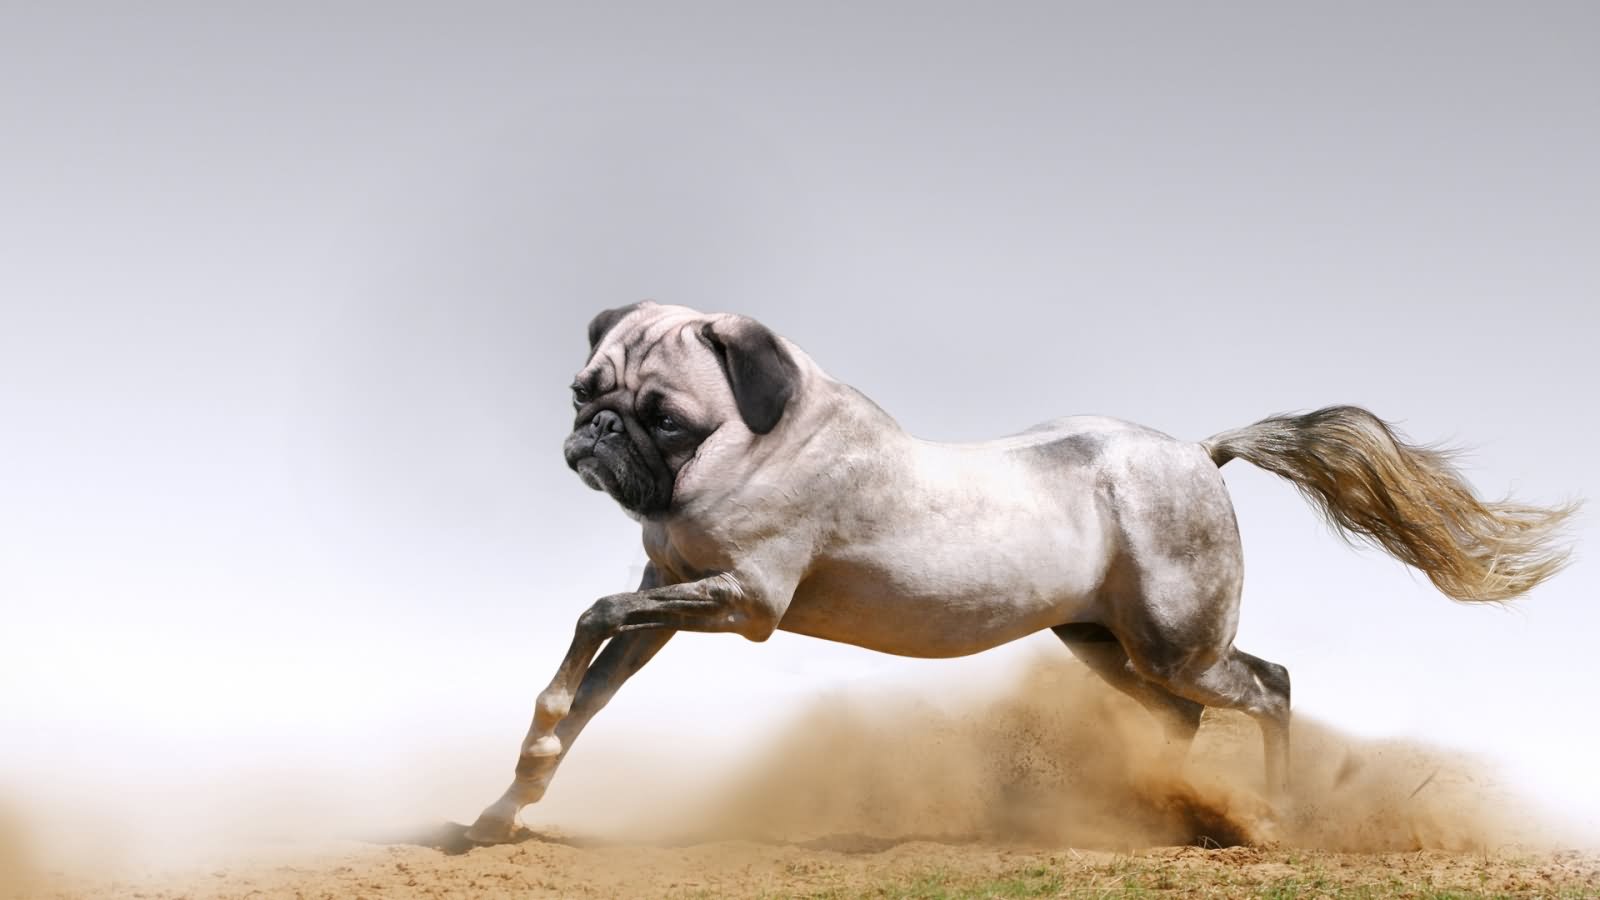 Running Horse With Pug Dog Face Funny Photoshopped Image